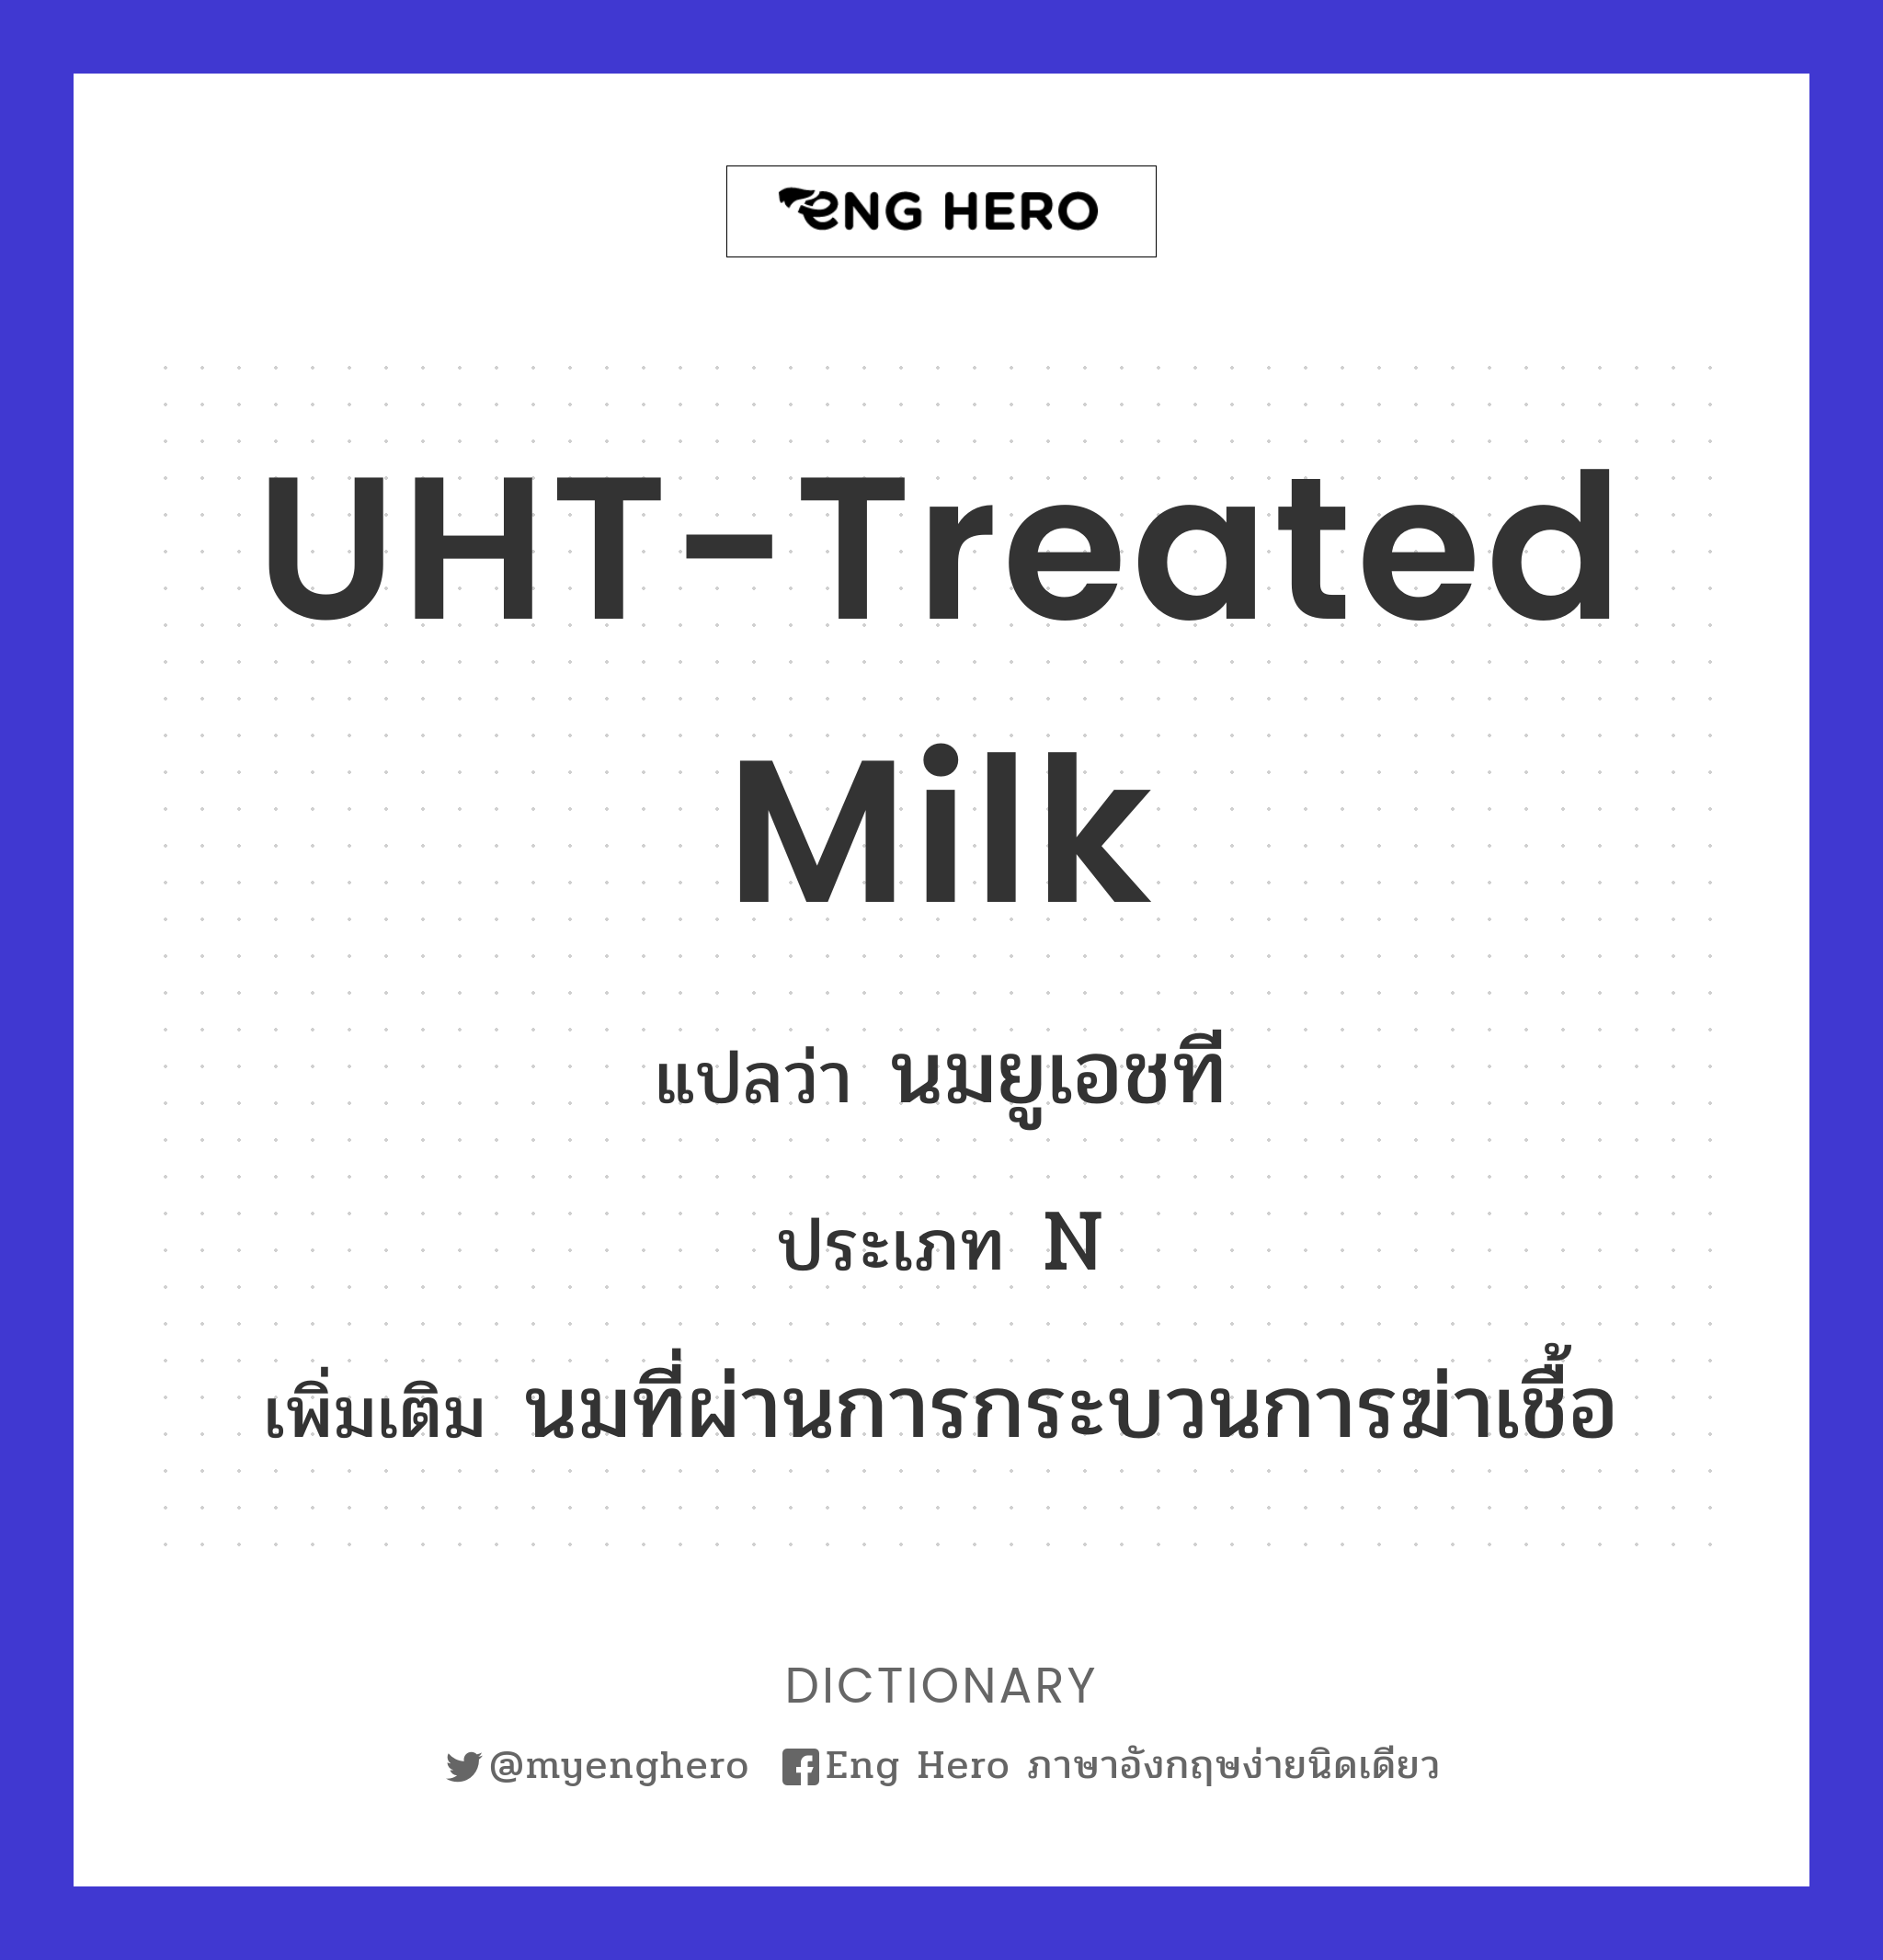 UHT-treated milk